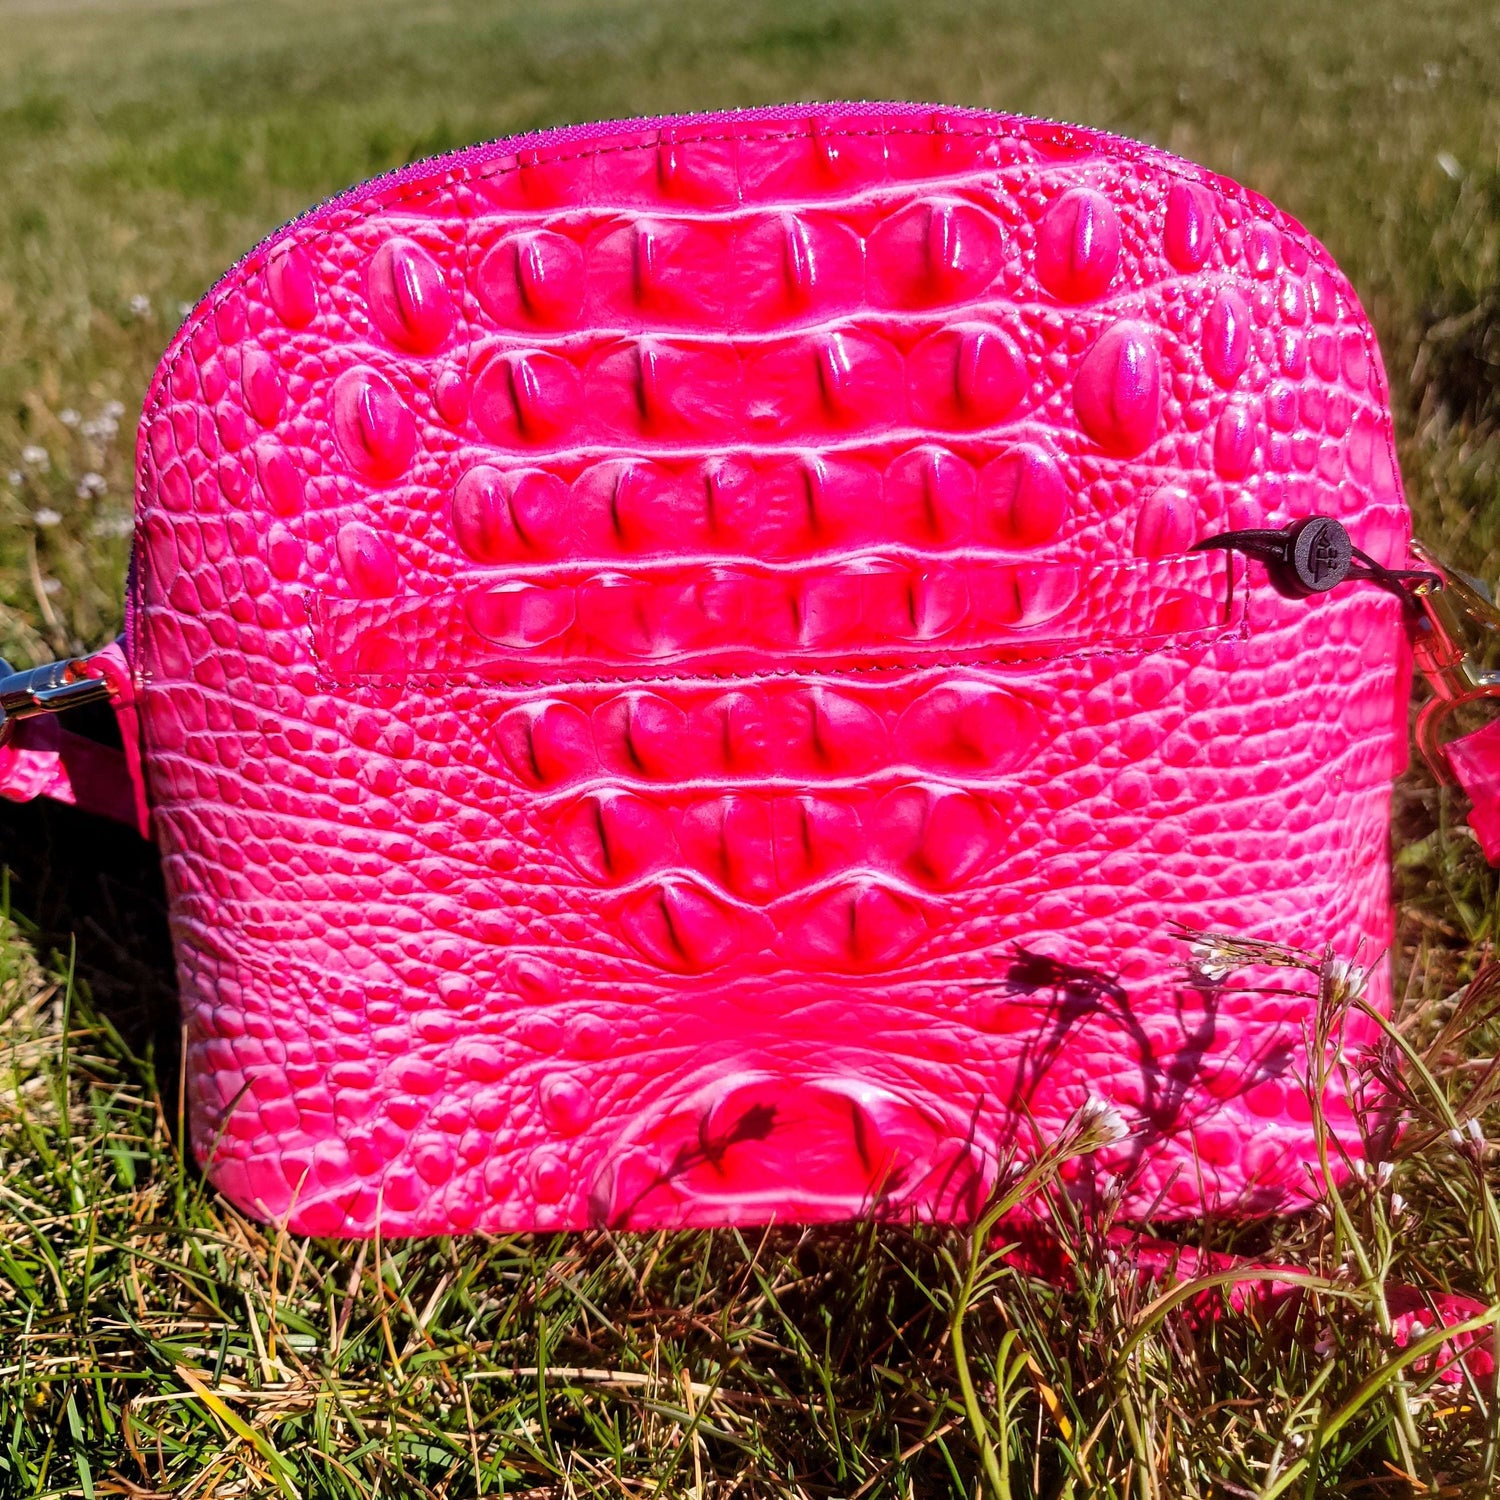 Brahmin Handbags - A perfectly pink crossbody for any socially